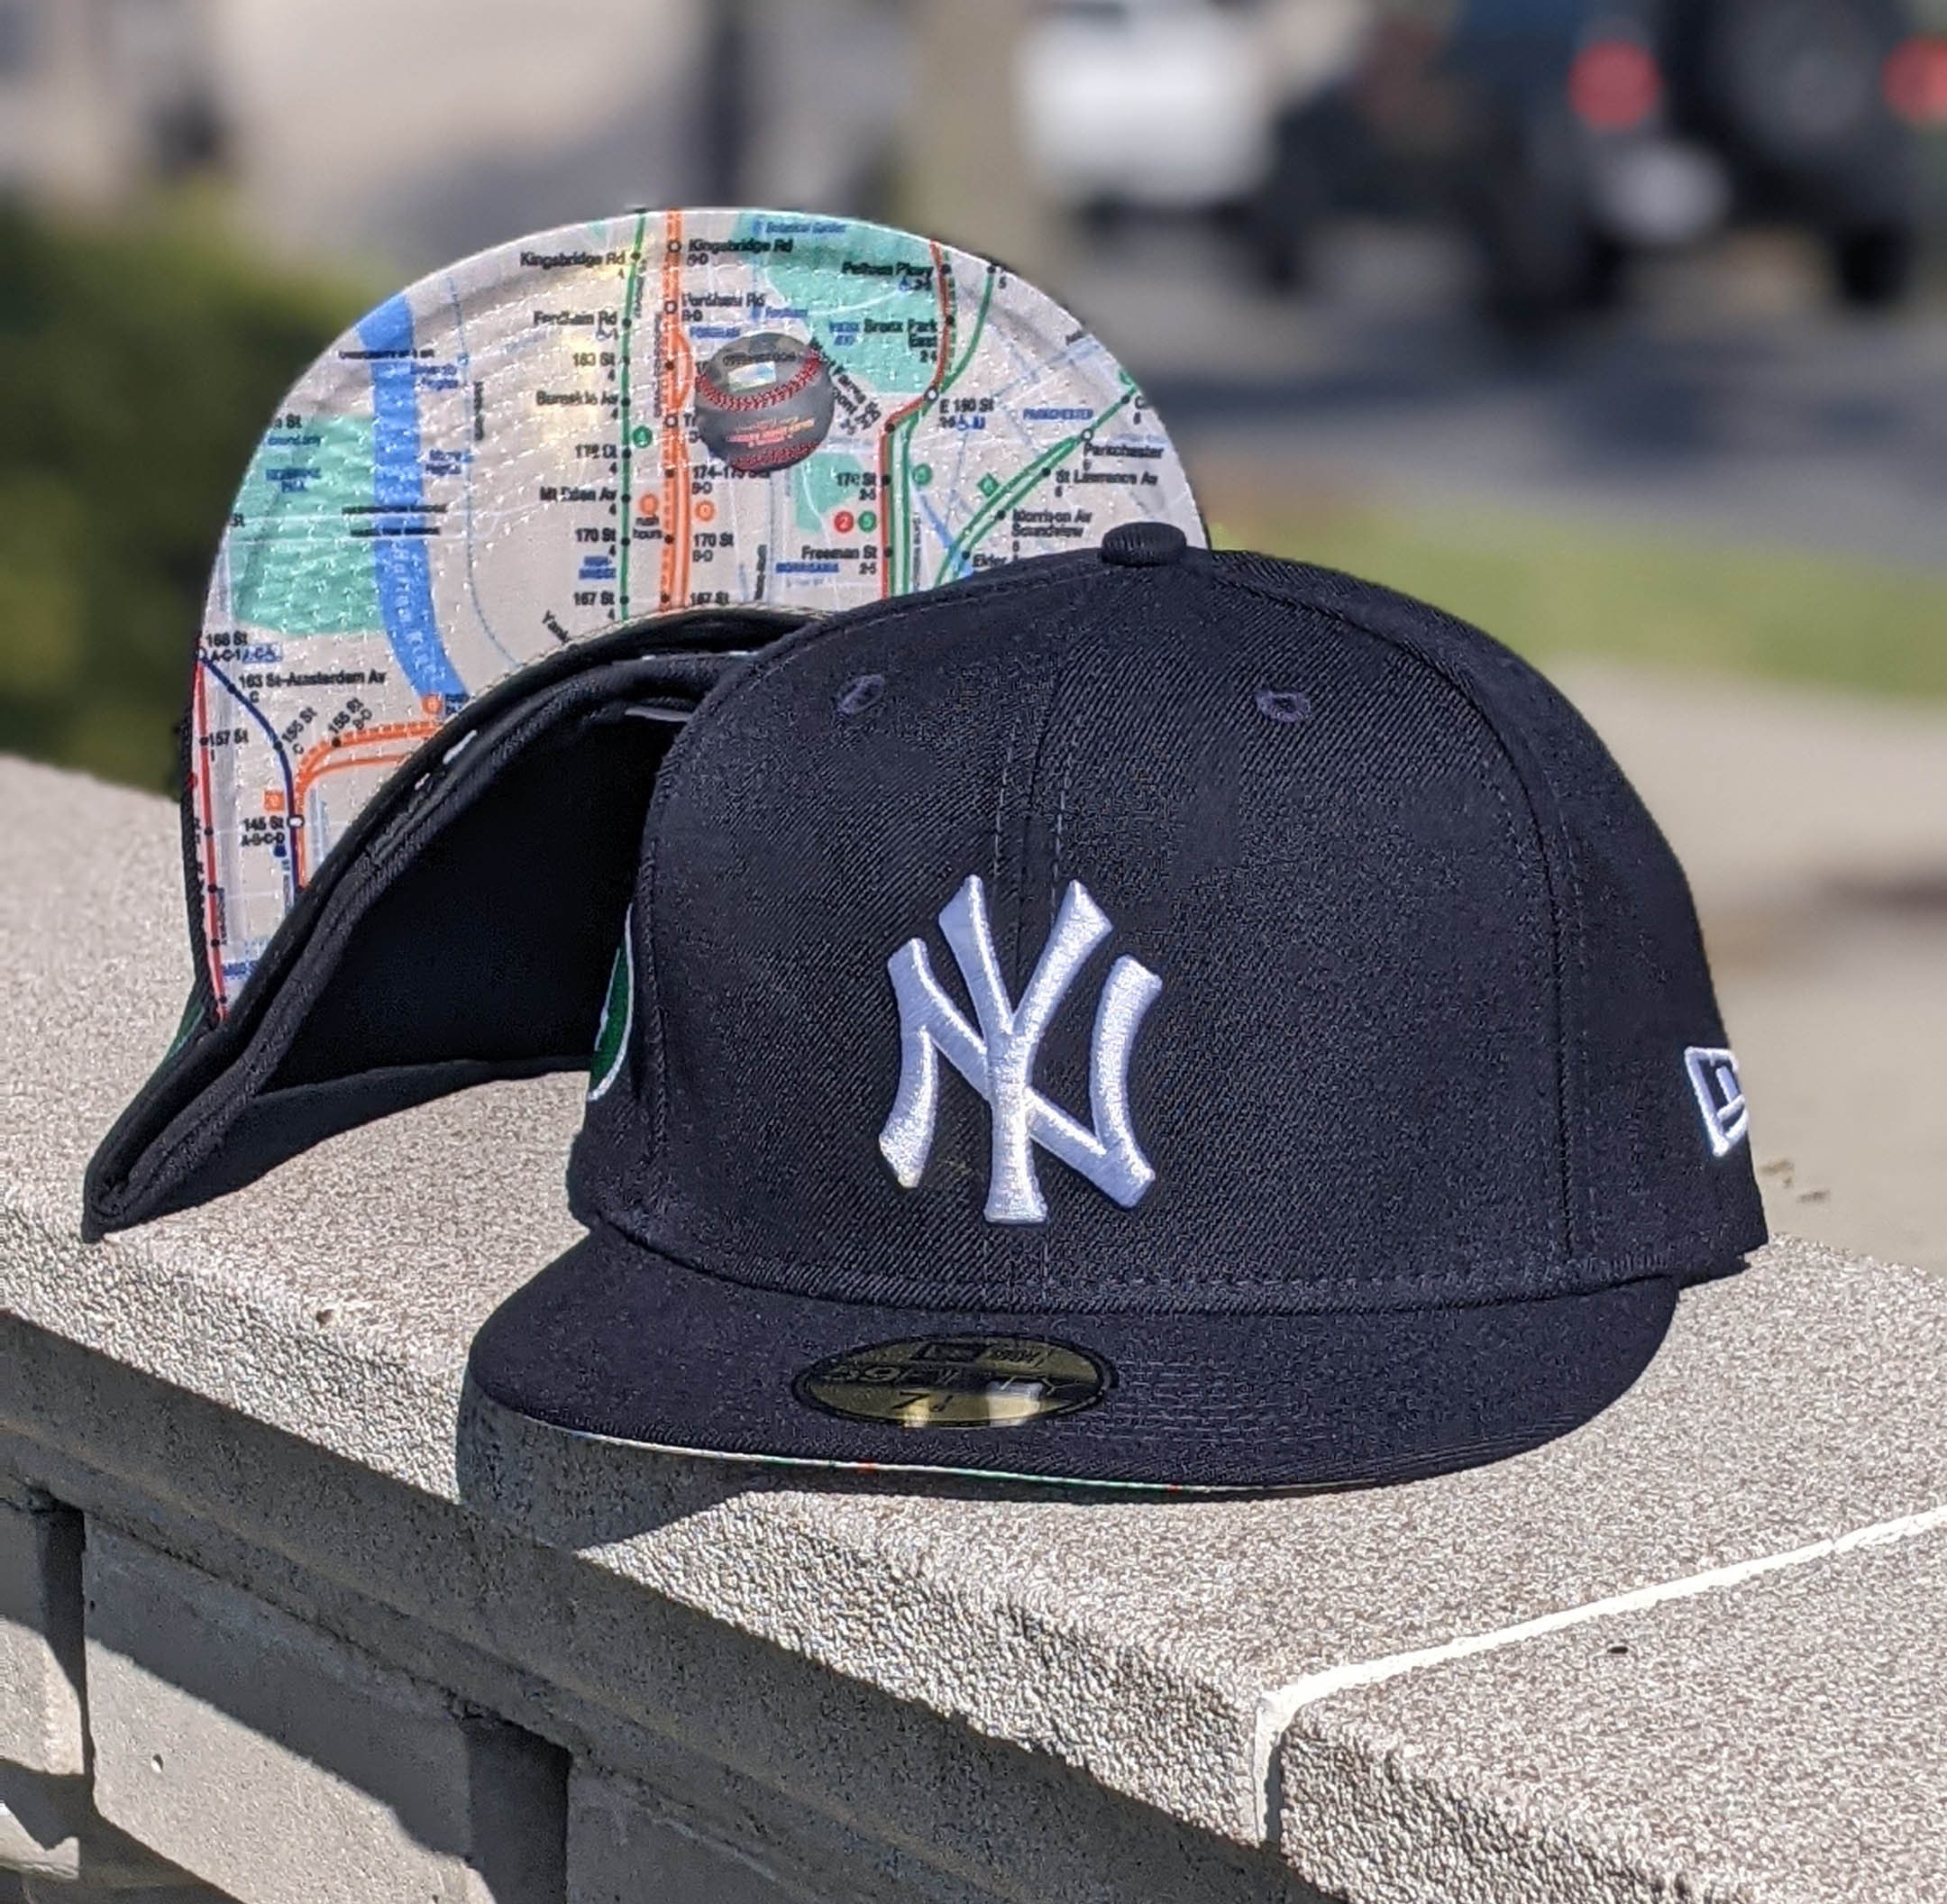 Youth Subway Baseball Caps | Baseball Caps | NYC Subway Line M